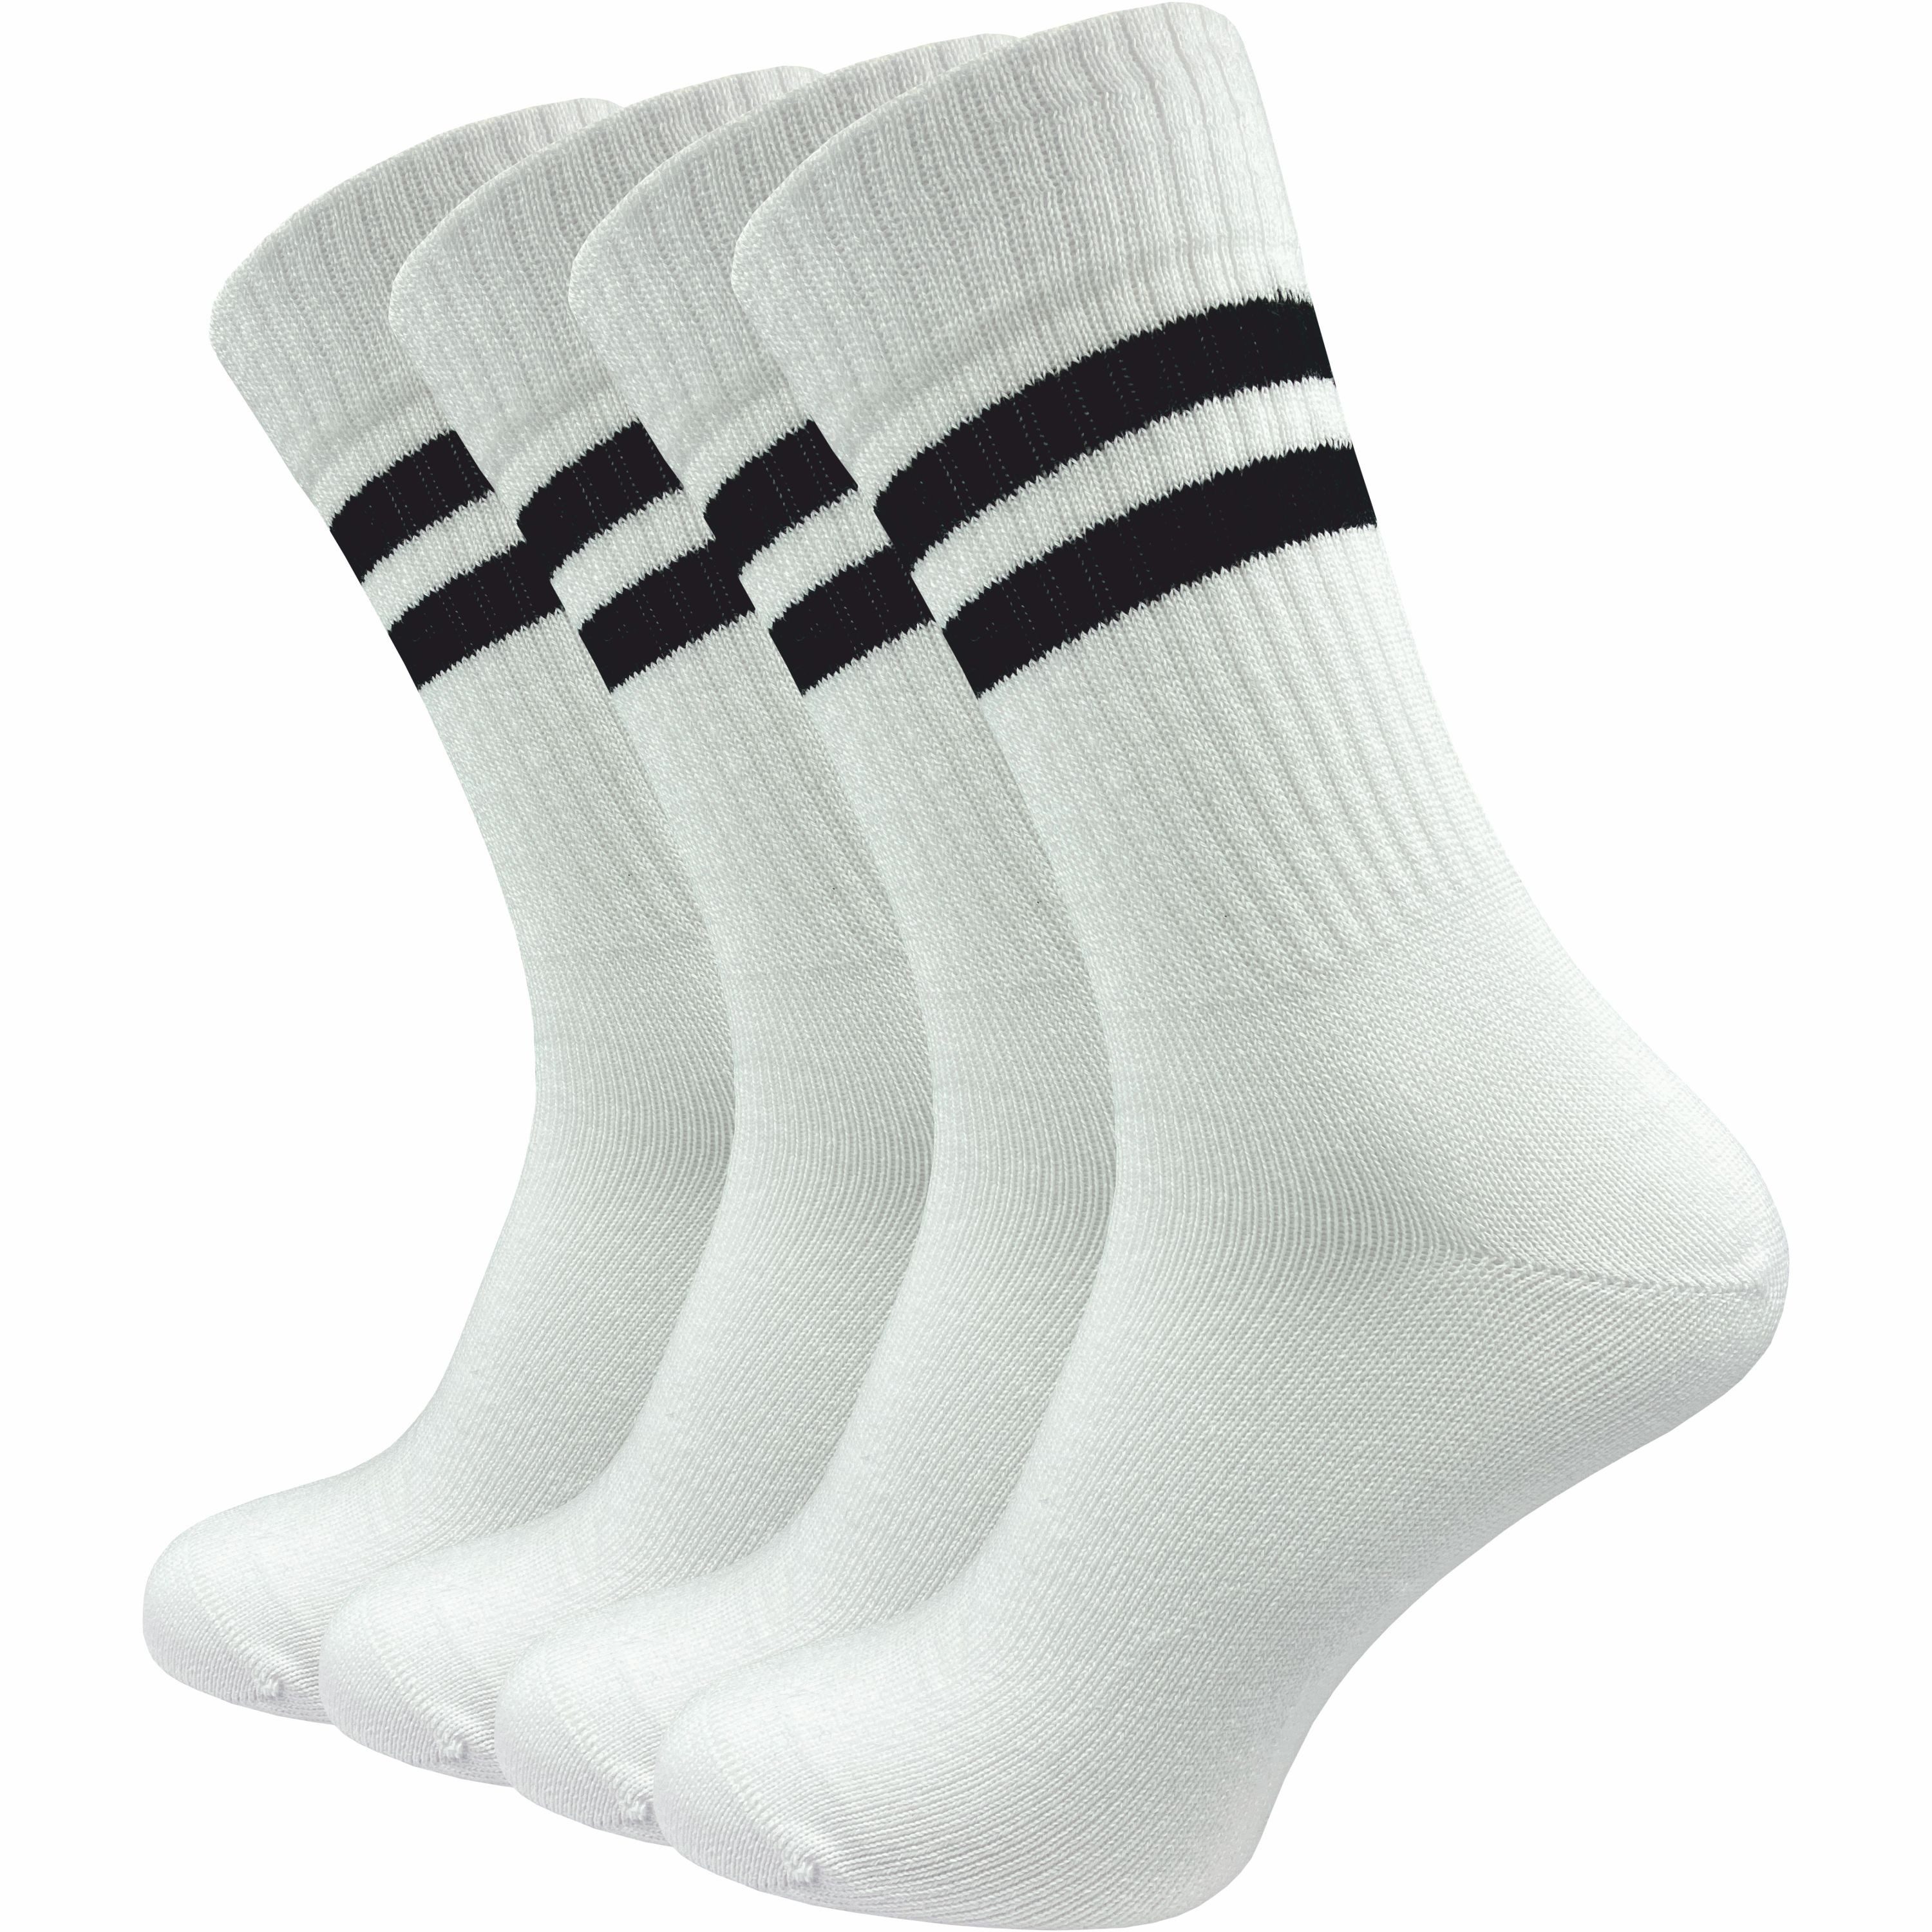 GAWILO Tennissocken für Herren mit Retro Streifen - sehr hochwertig (4 Paar) Retro Socken mit verstärkter Ferse und Spitze - made in Europe